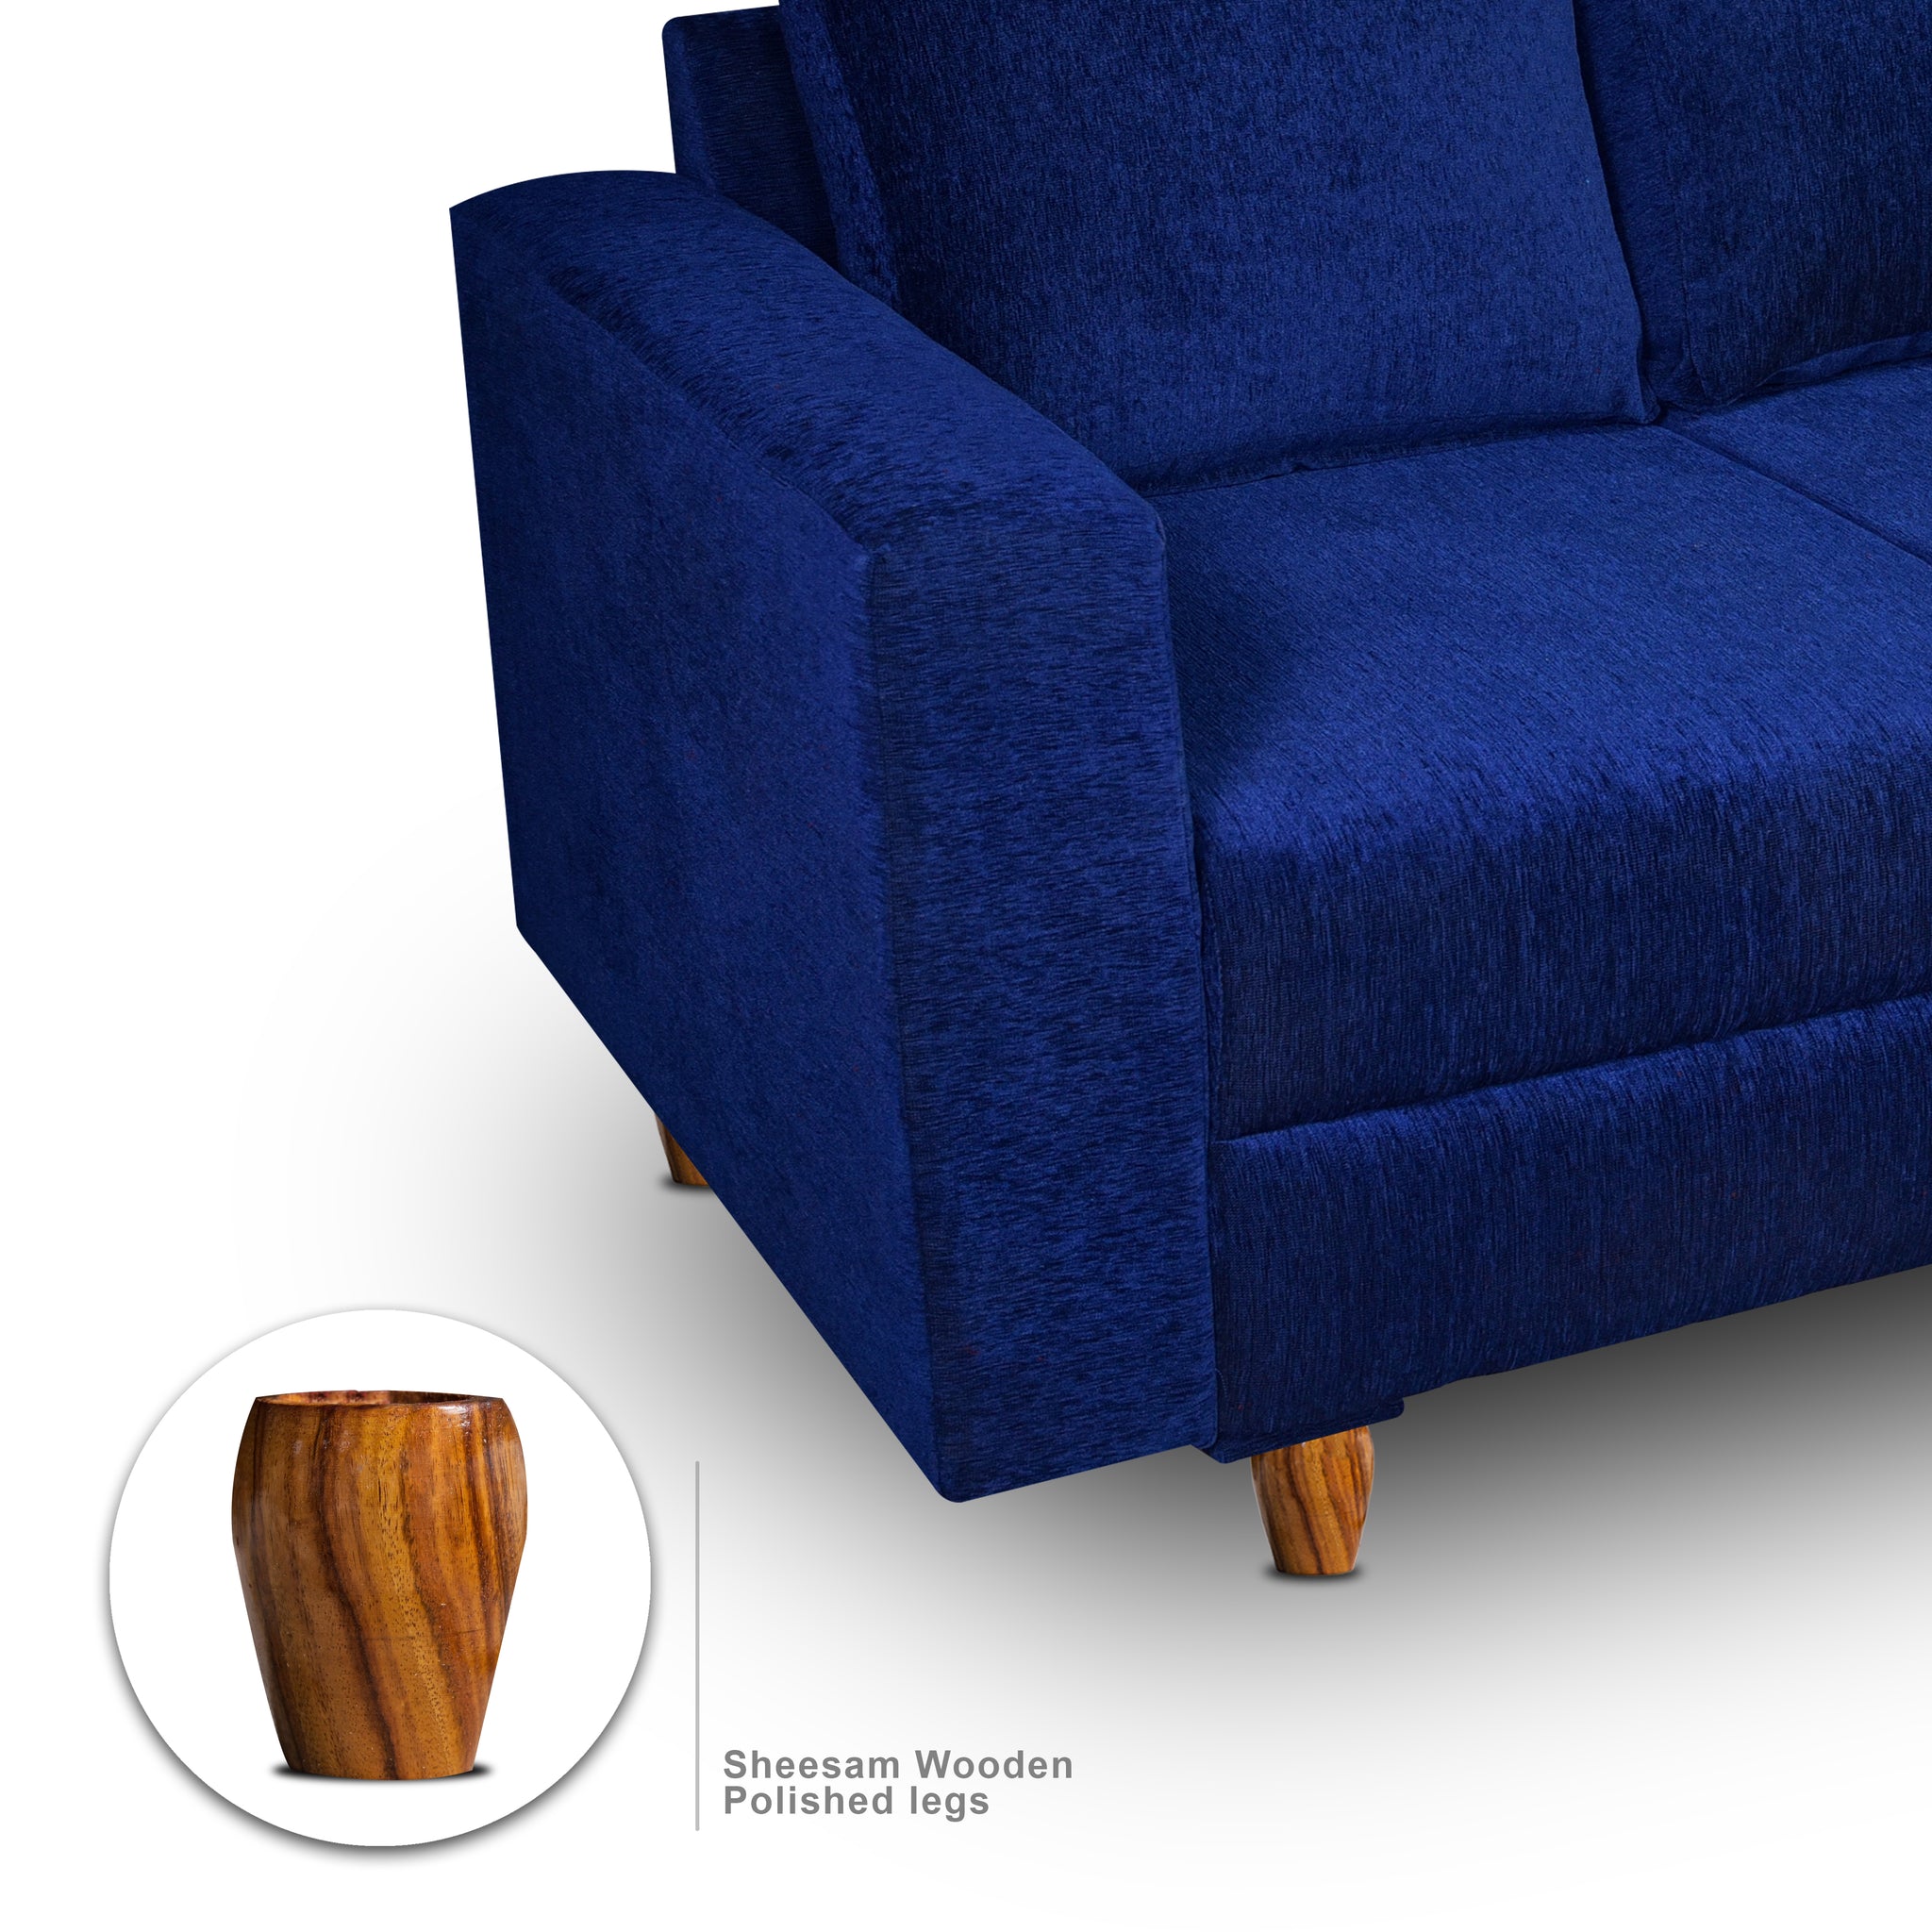 Rio 2 Seater Sofa, Chenille Molfino Fabric (Finish Color - Blue)